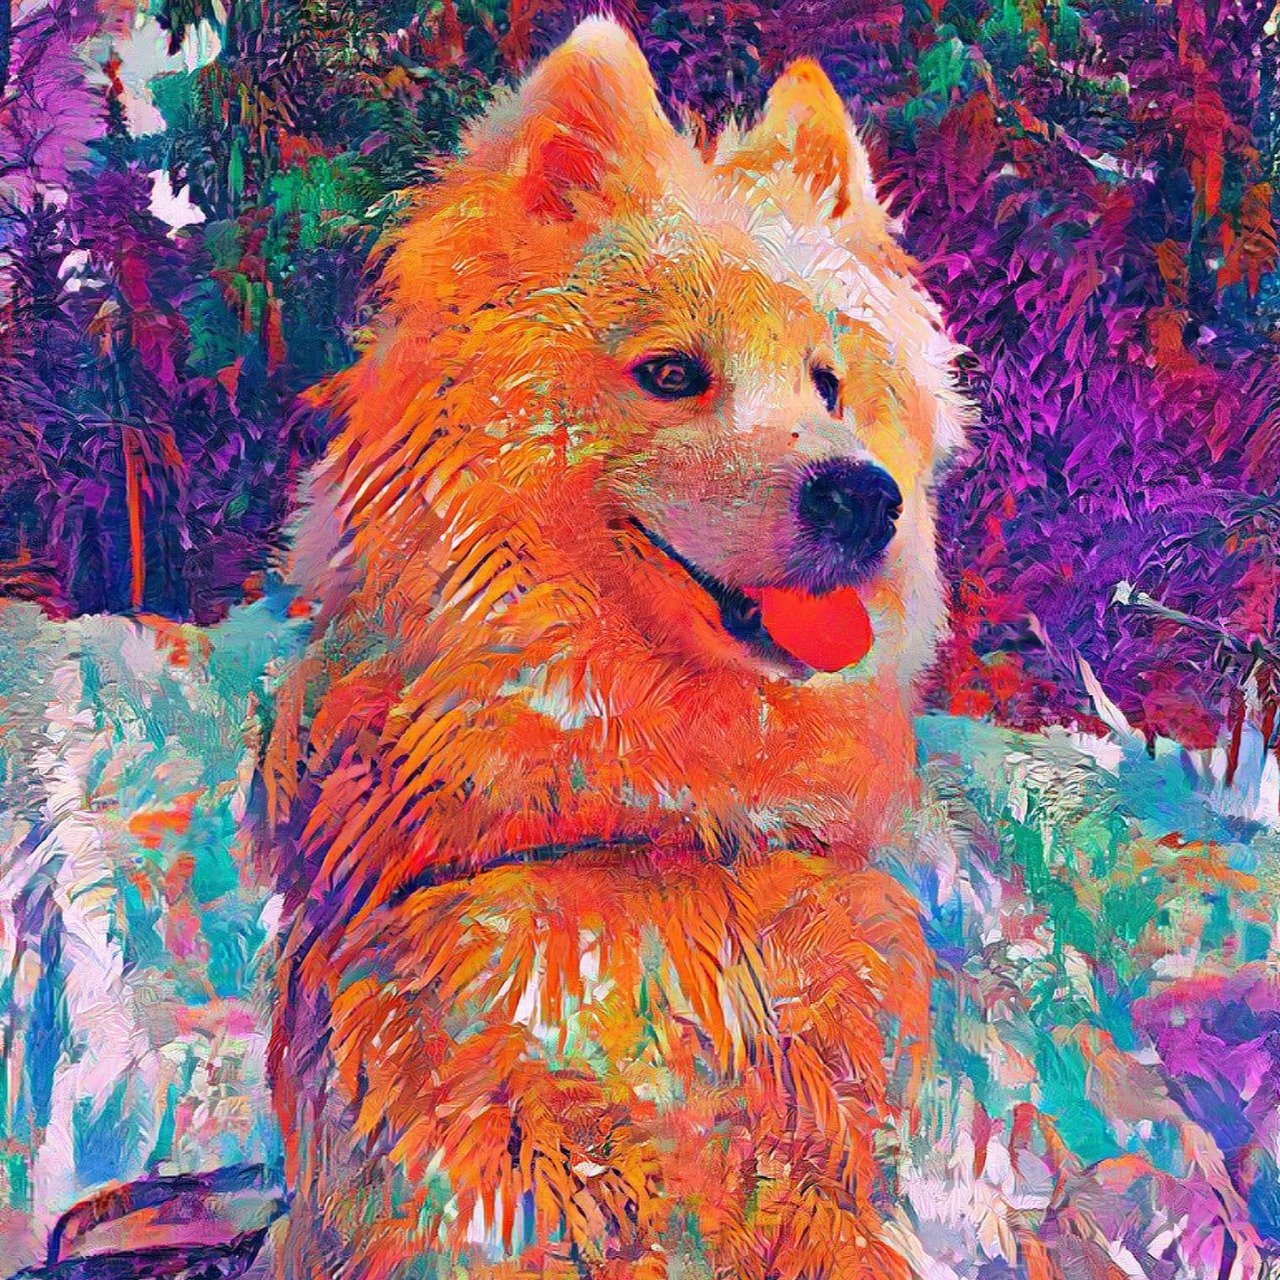 Polar Hund als Gemälde gezeichnet